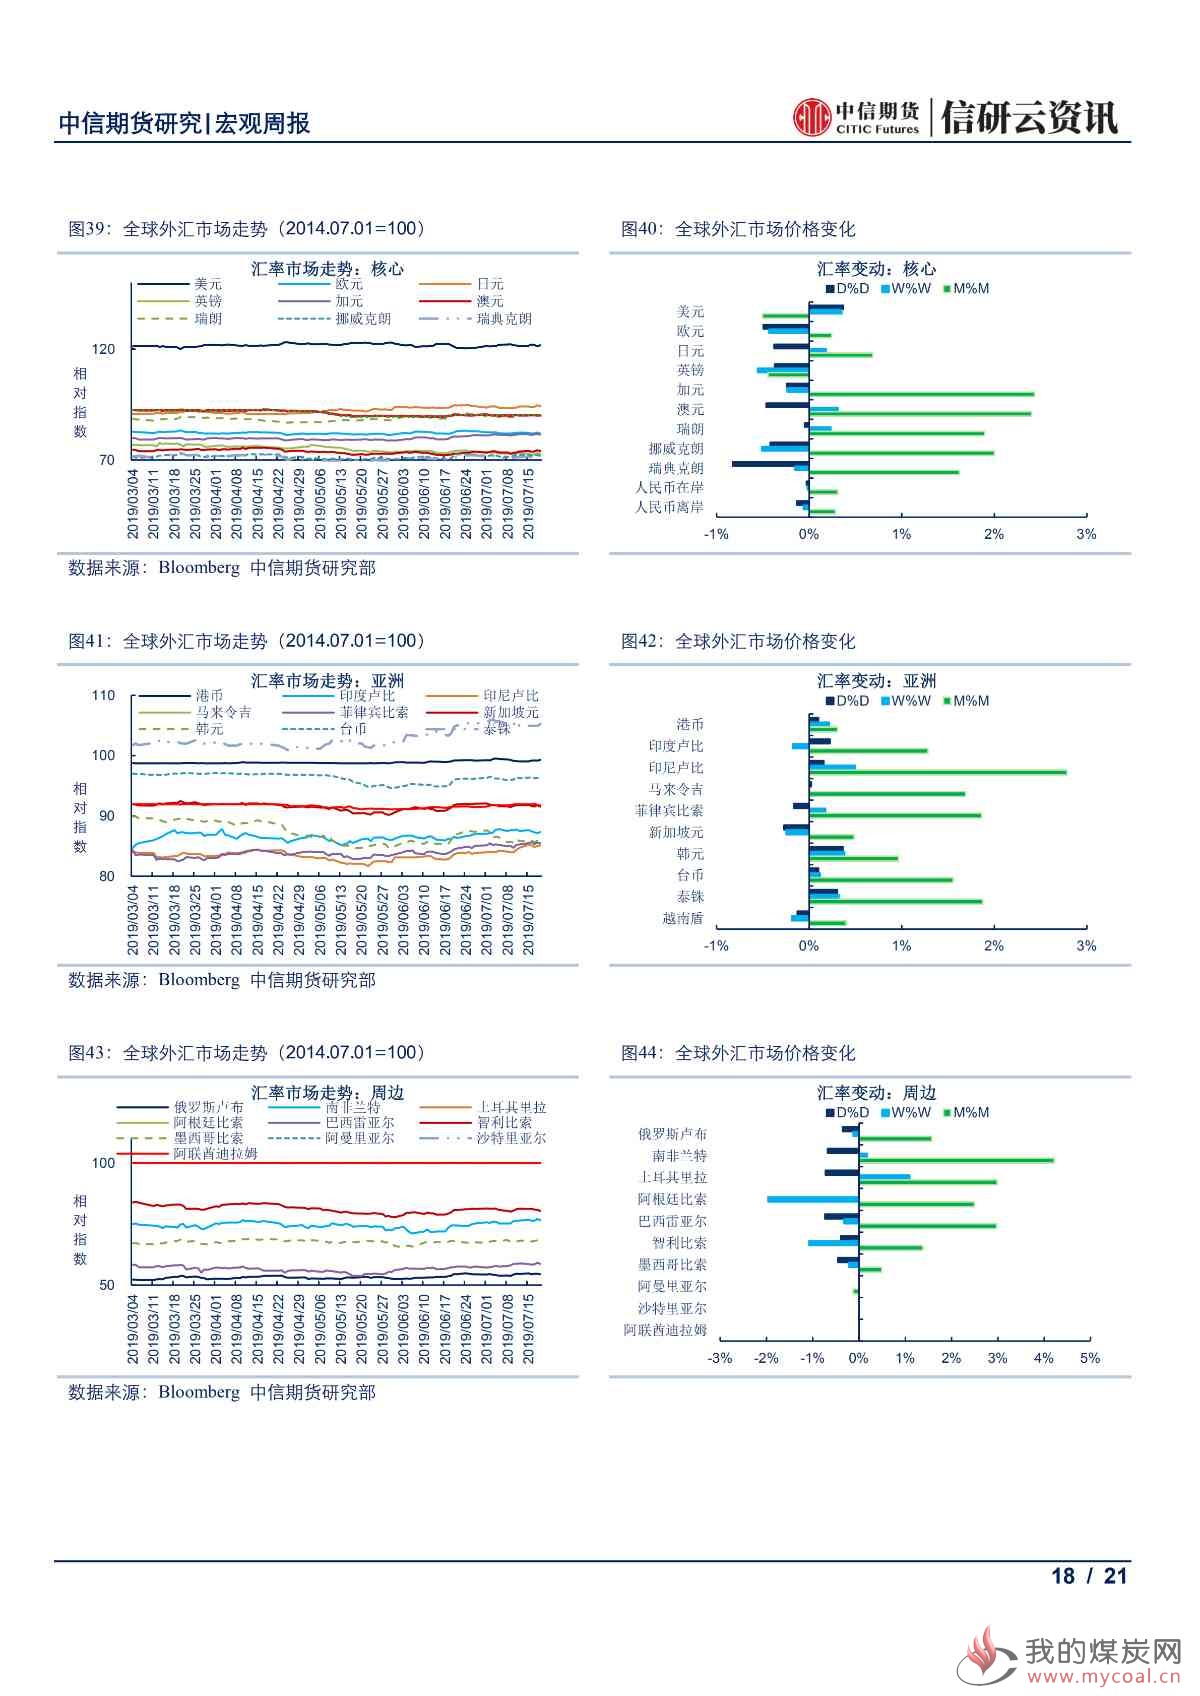 【中信期货宏观】中国上半年经济结构持续改善 欧美央行鸽派倾向愈发明显——周报20190722_17